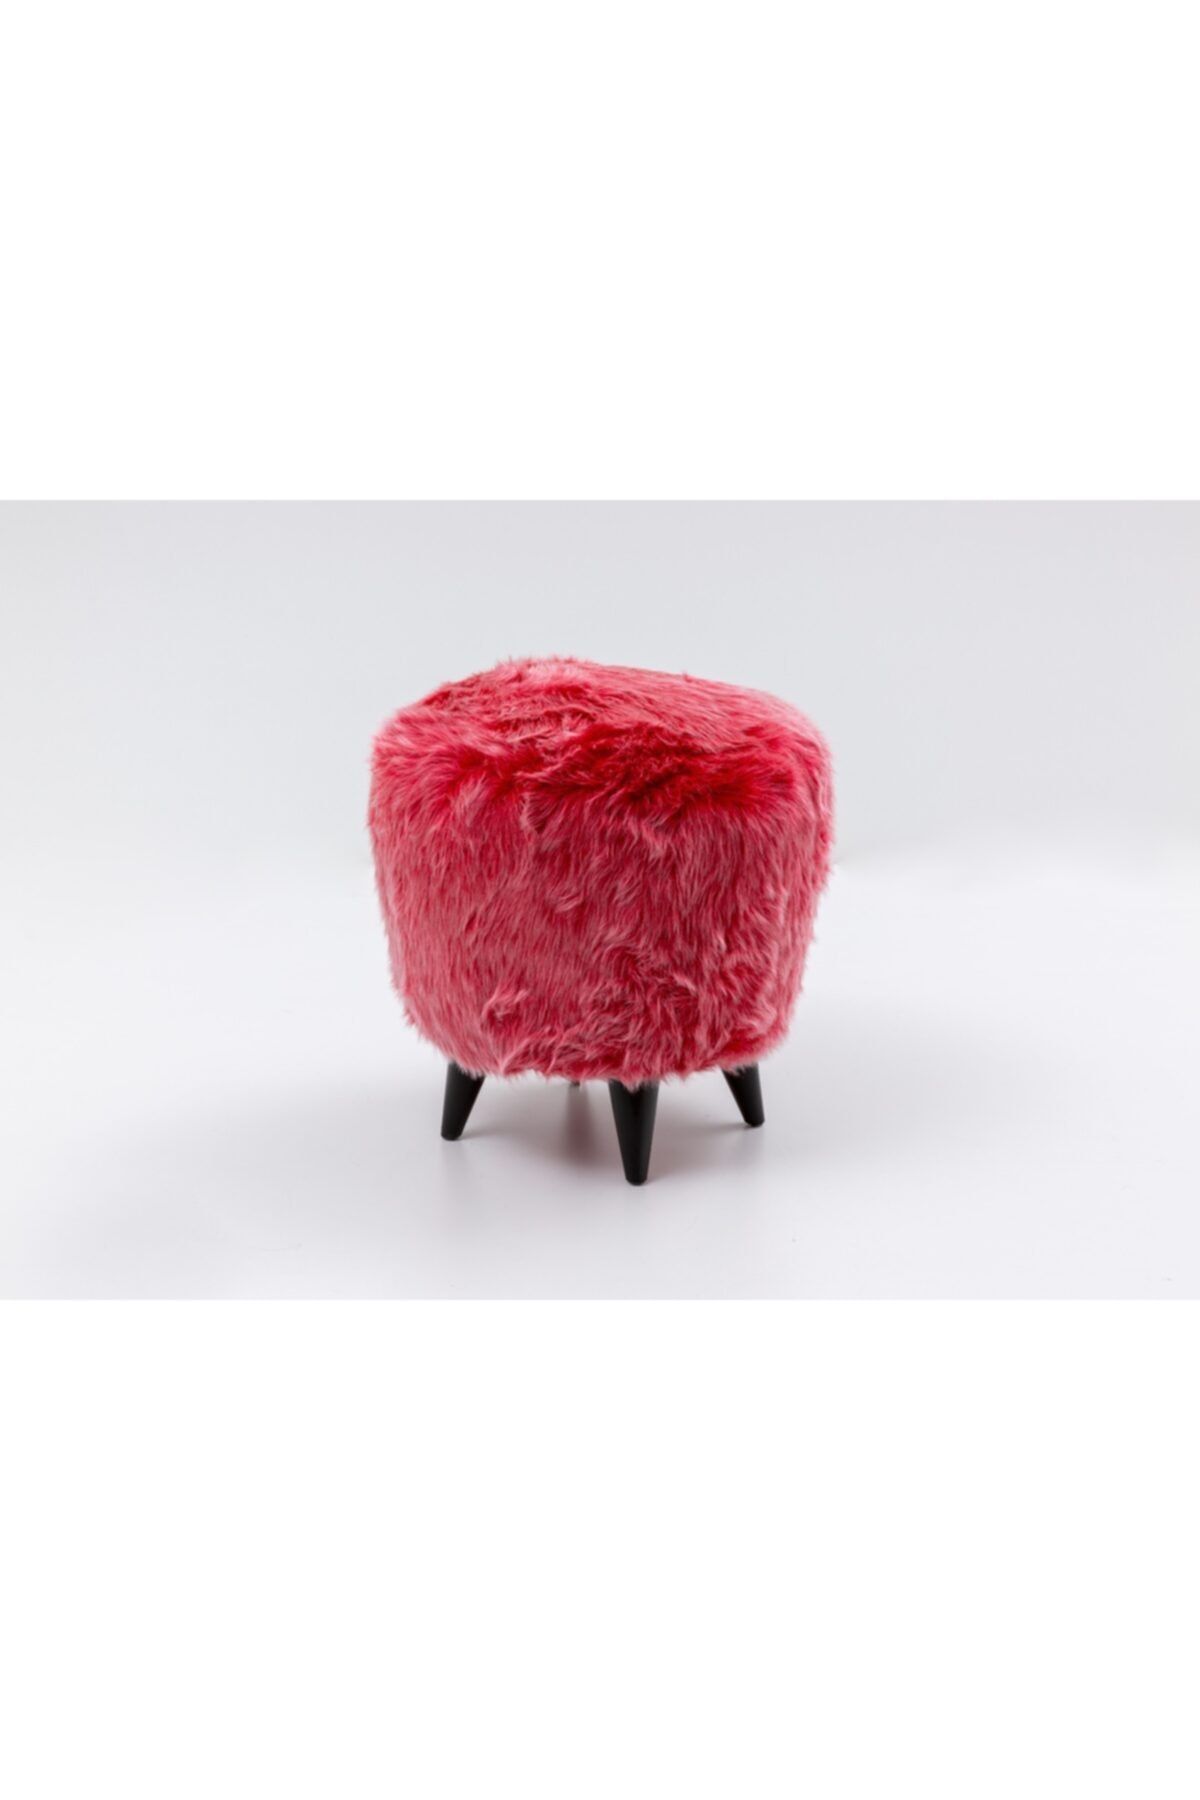 mobilya kervanı Peluş Puf ,dekoratif Puf,makyaj Masası Pufu Kırmızı